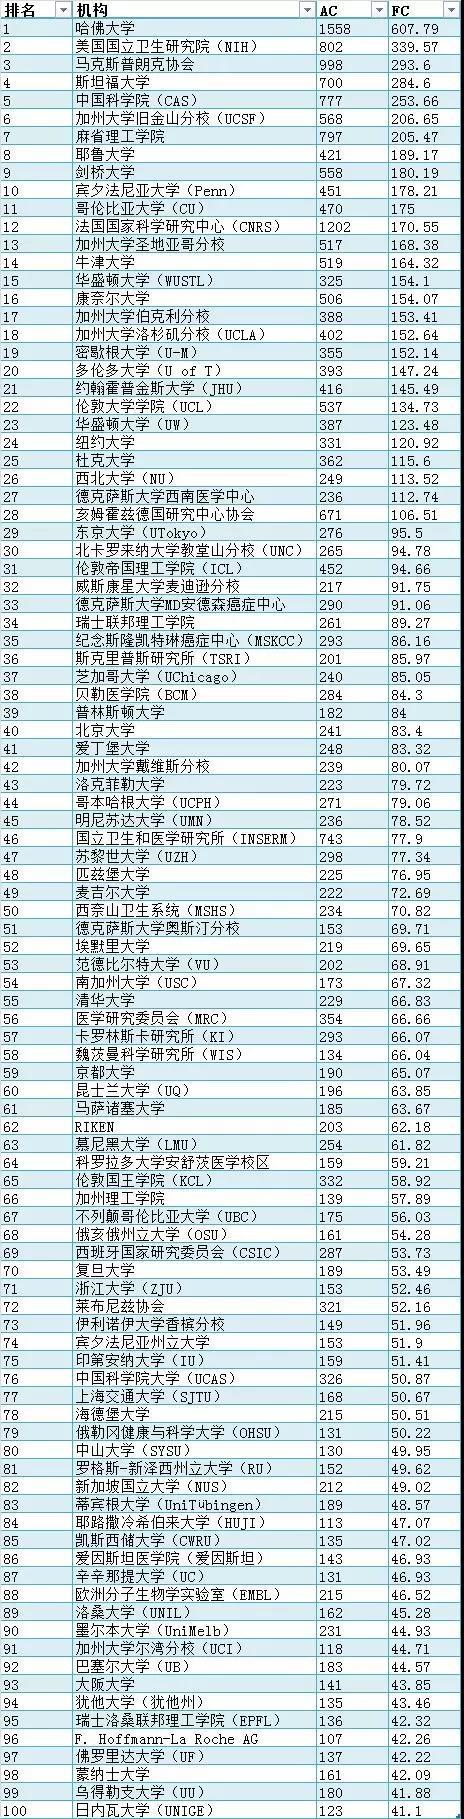 最新自然指数排名：中国科学院位居榜首，湖南大学首次入围全球大学前100强3